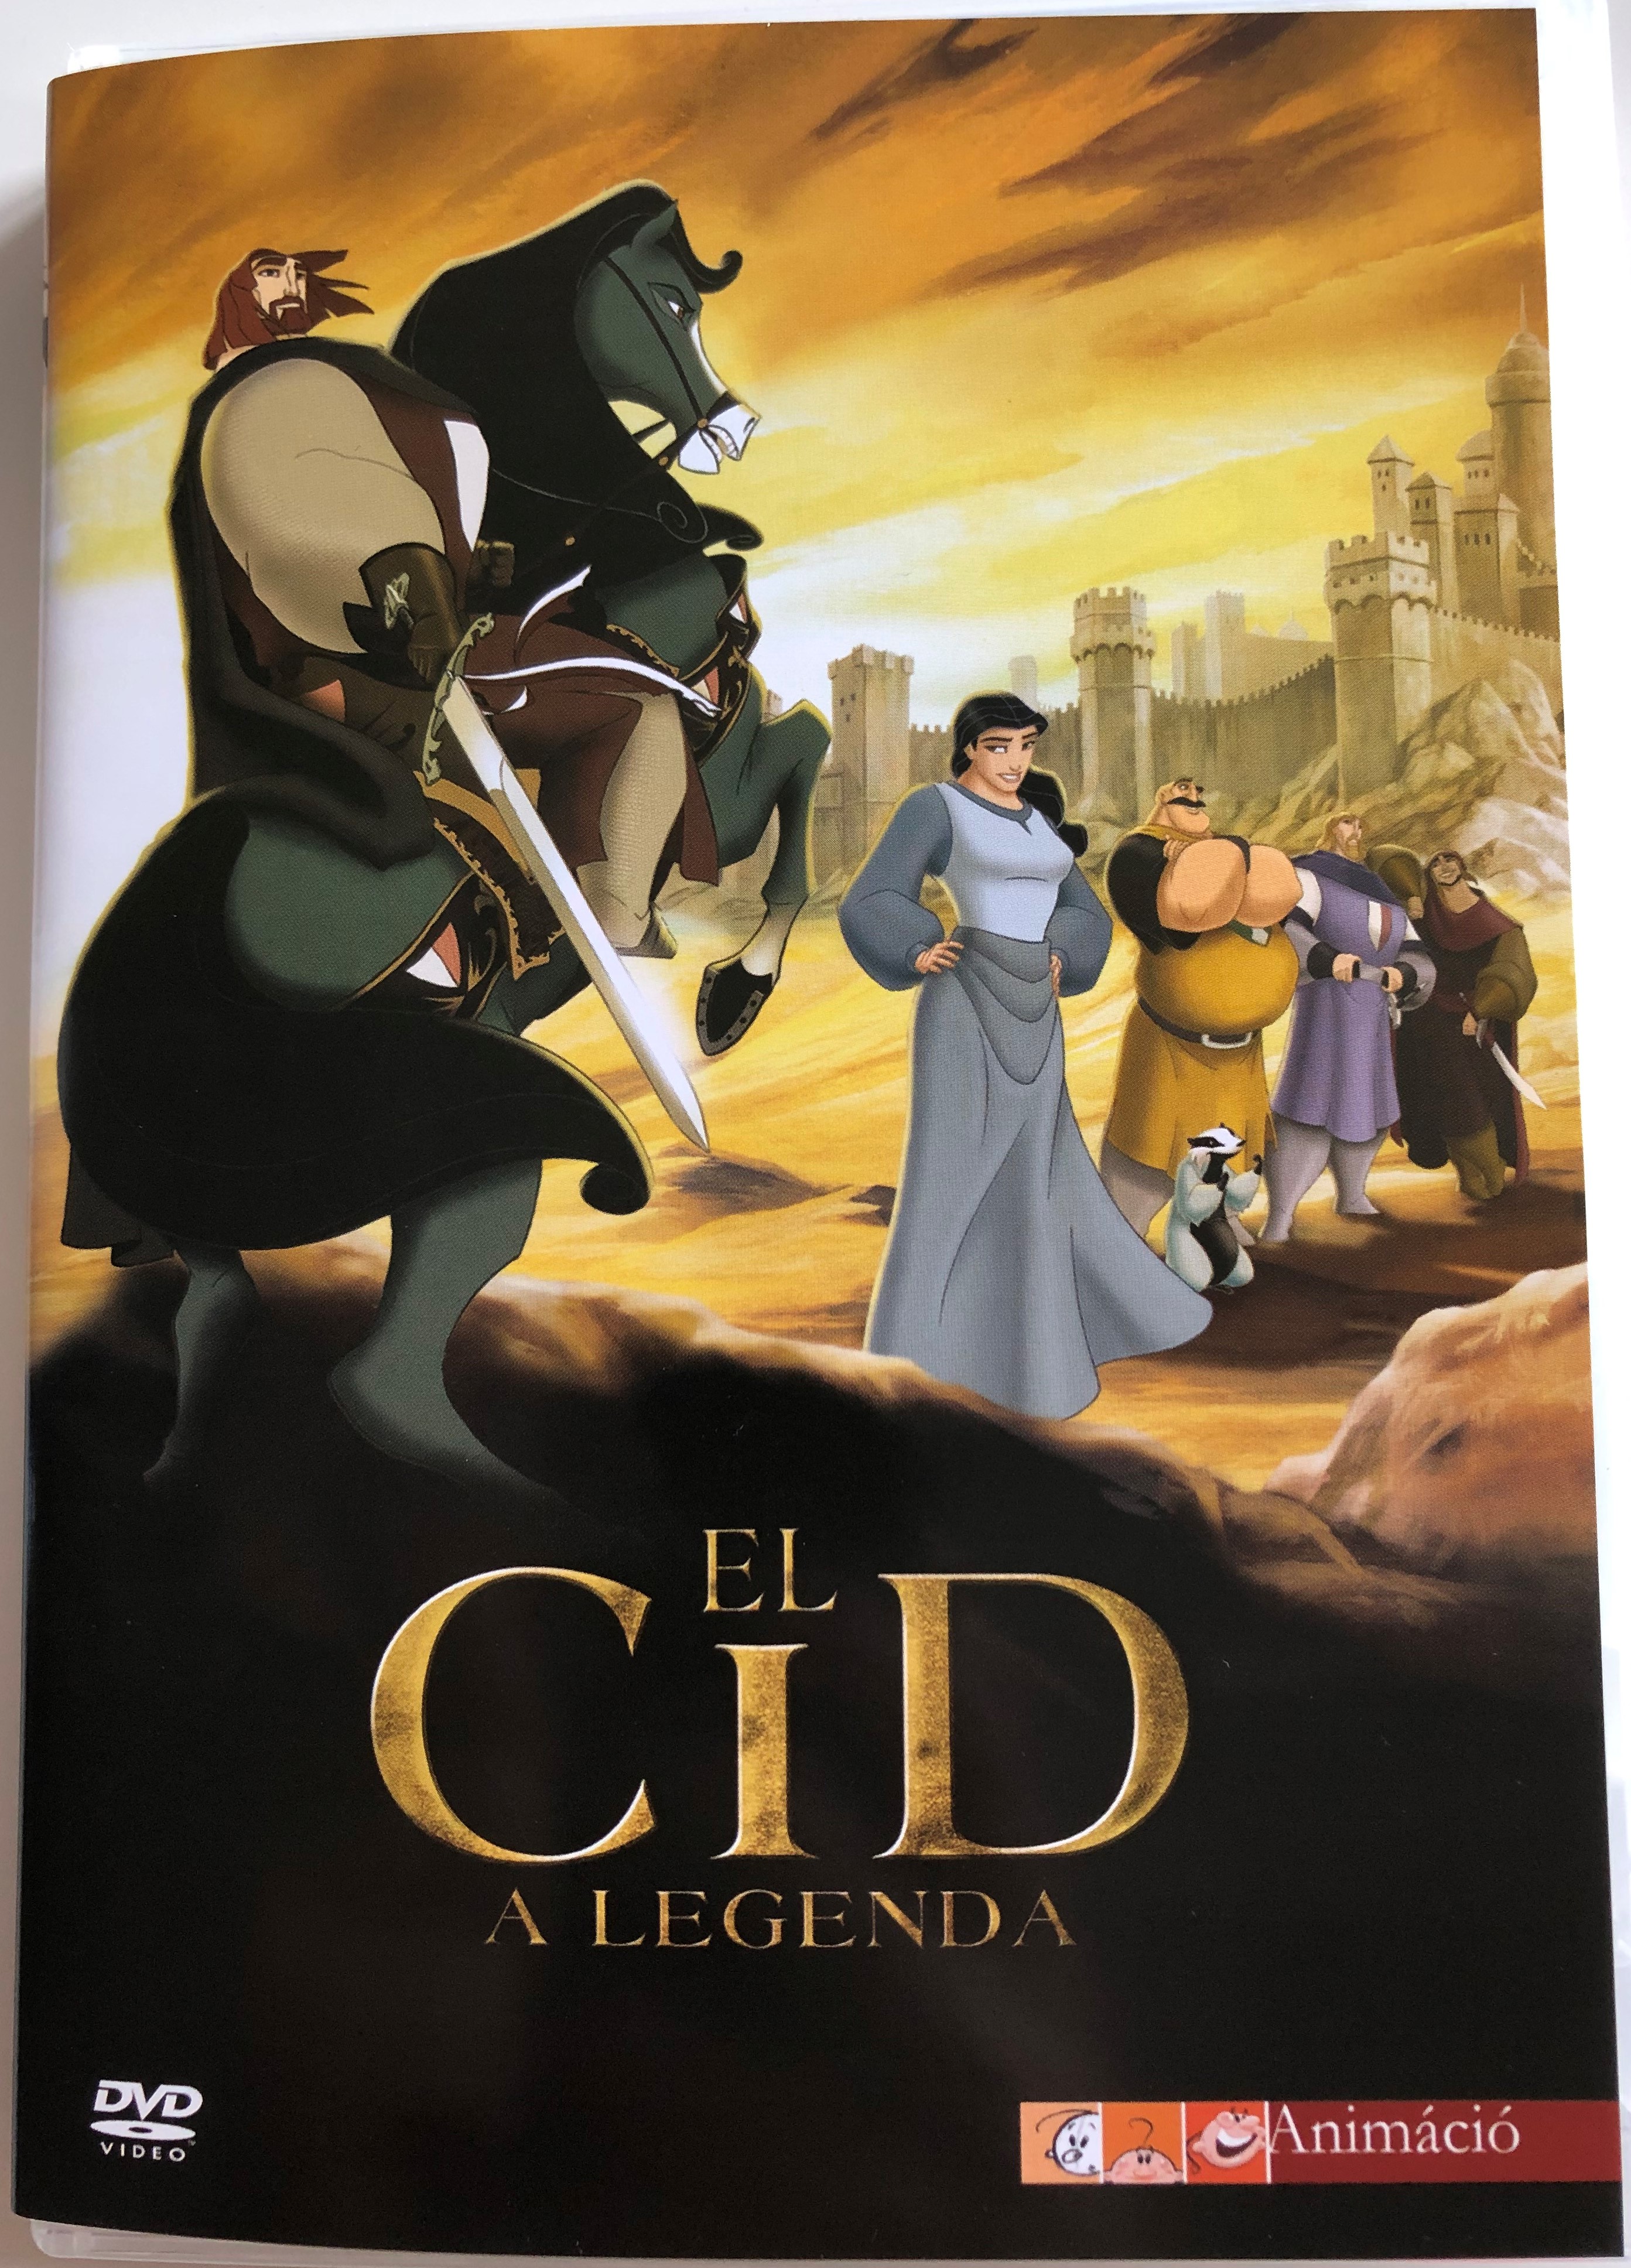 El Cid La leyenda DVD 2003 El Cid - A legenda 1